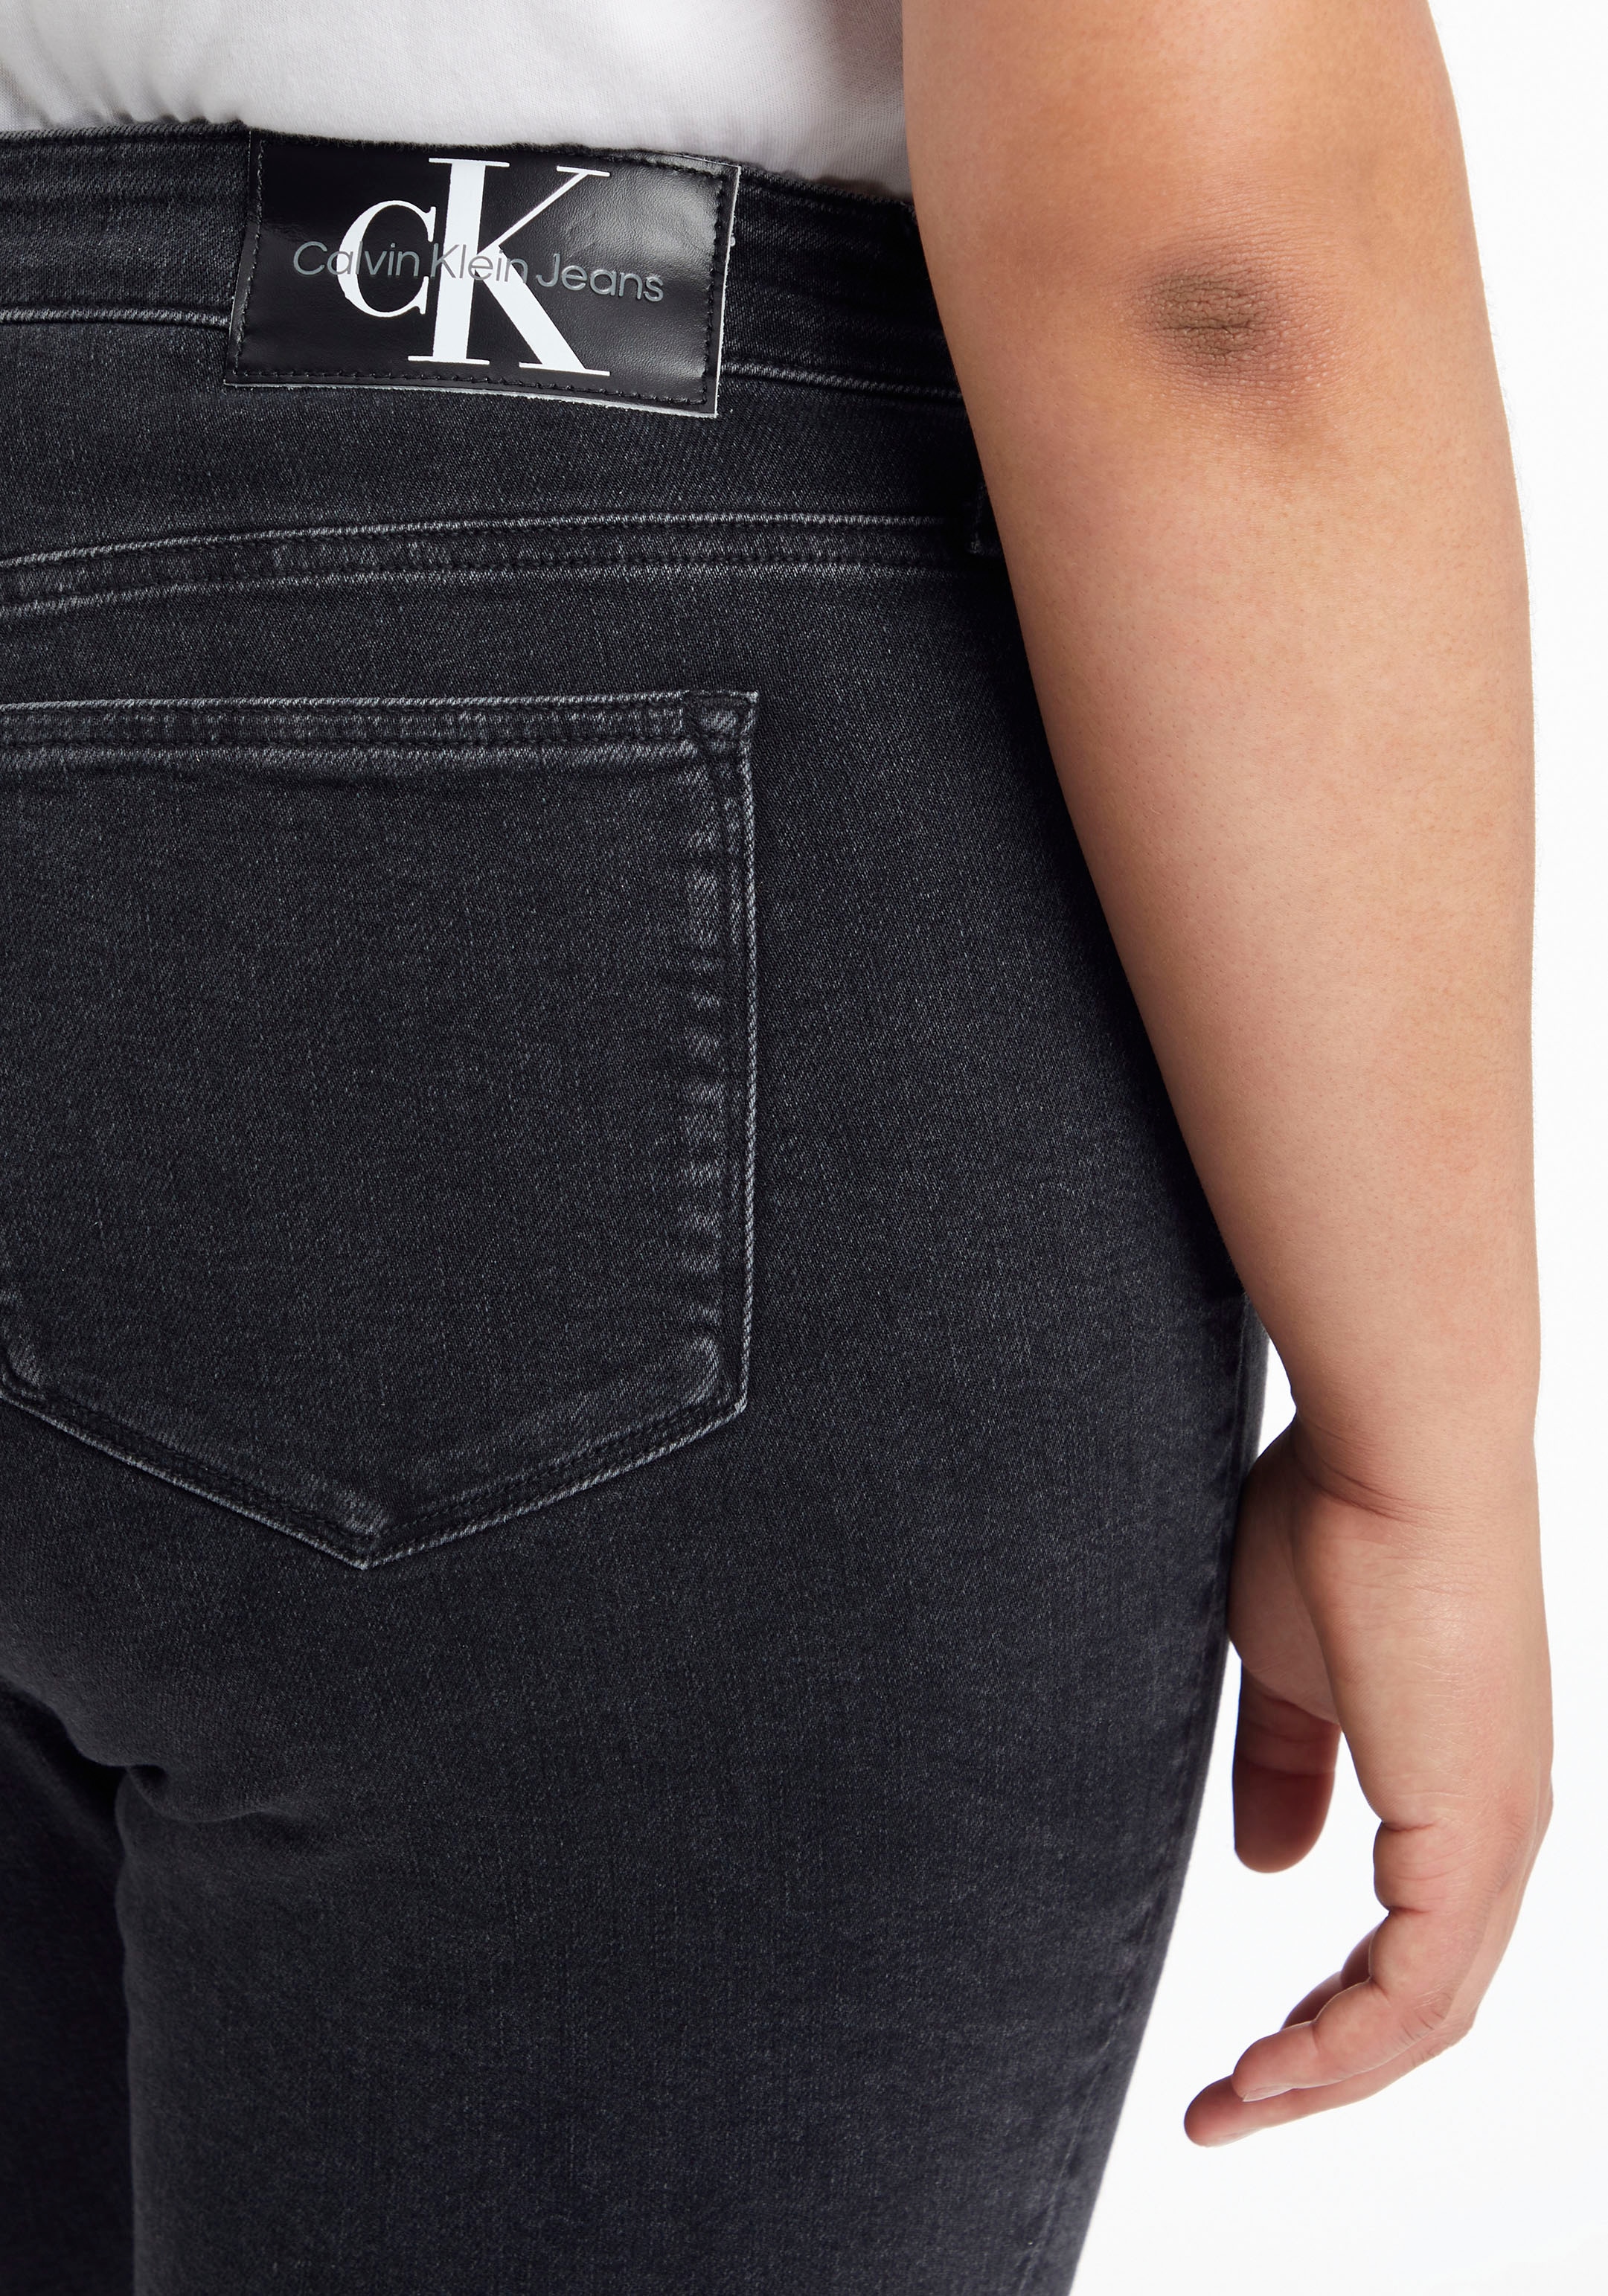 Calvin Klein Jeans Plus Skinny-fit-Jeans, Jeans Online Shop in OTTO angeboten wird Weiten im